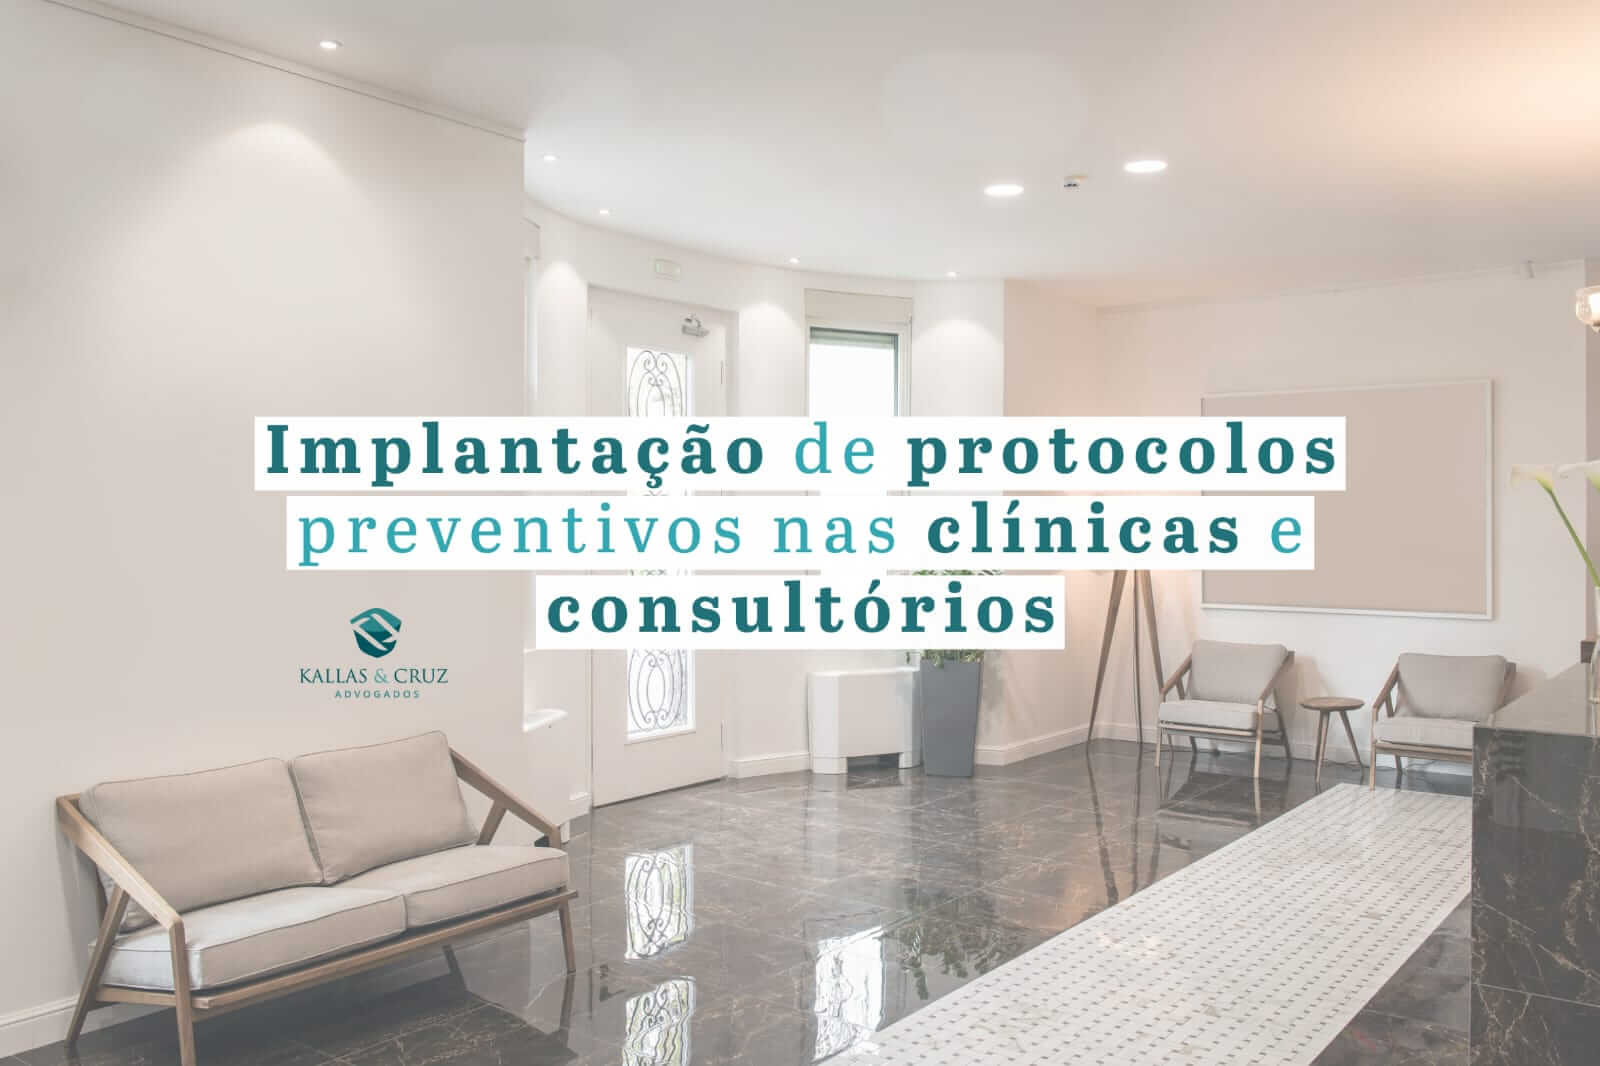 Implantação de protocolos preventivos nas clínicas e consultórios